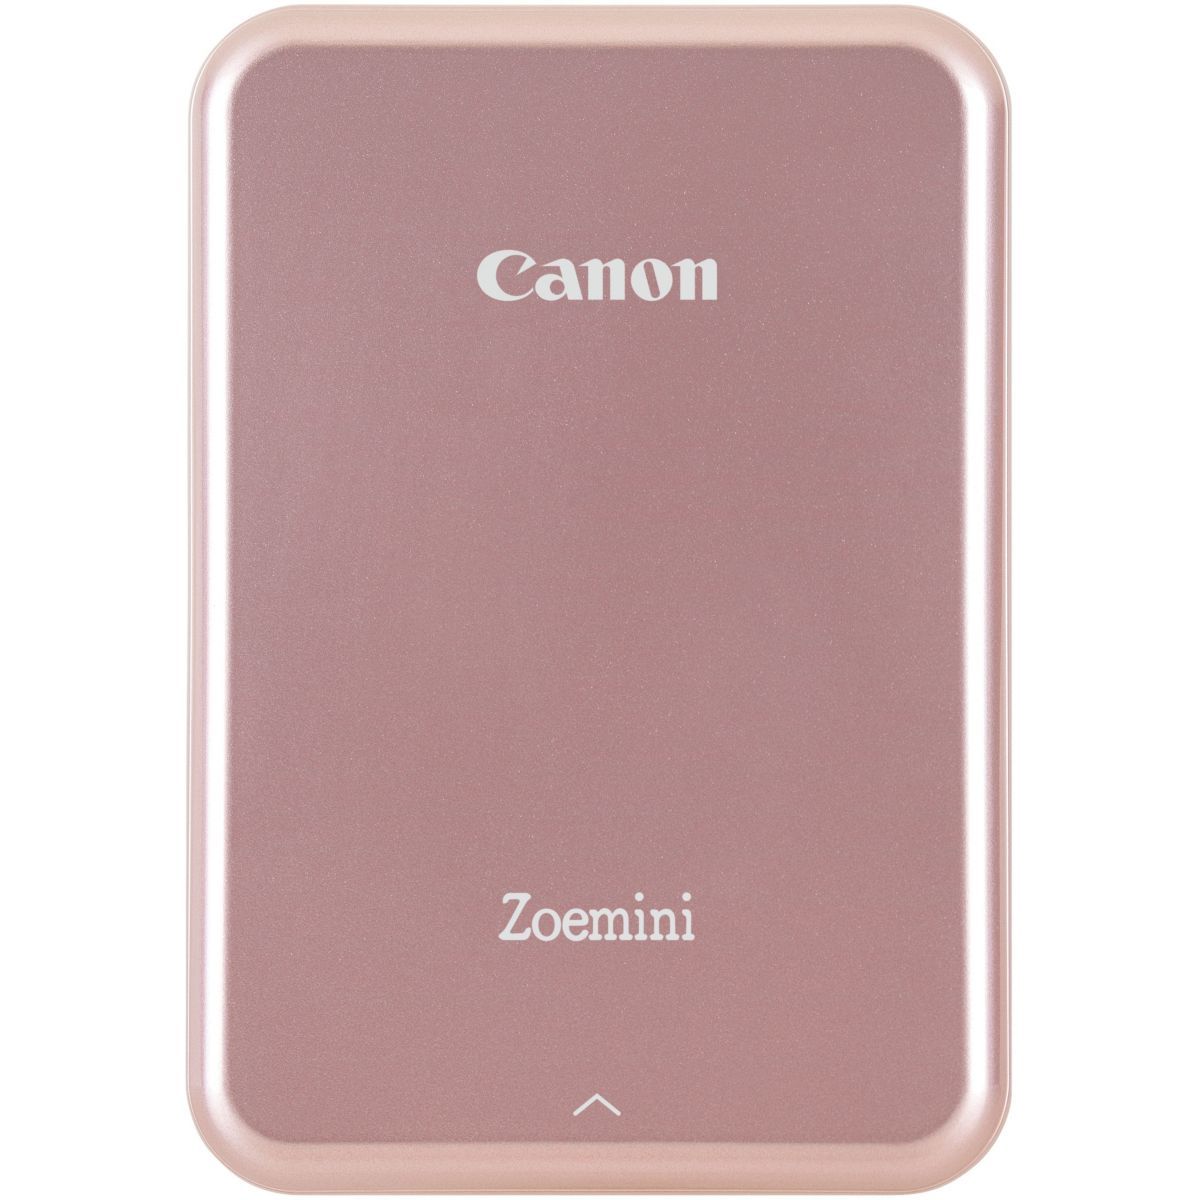 Canon Imprimante photo portable Zoemini Rose